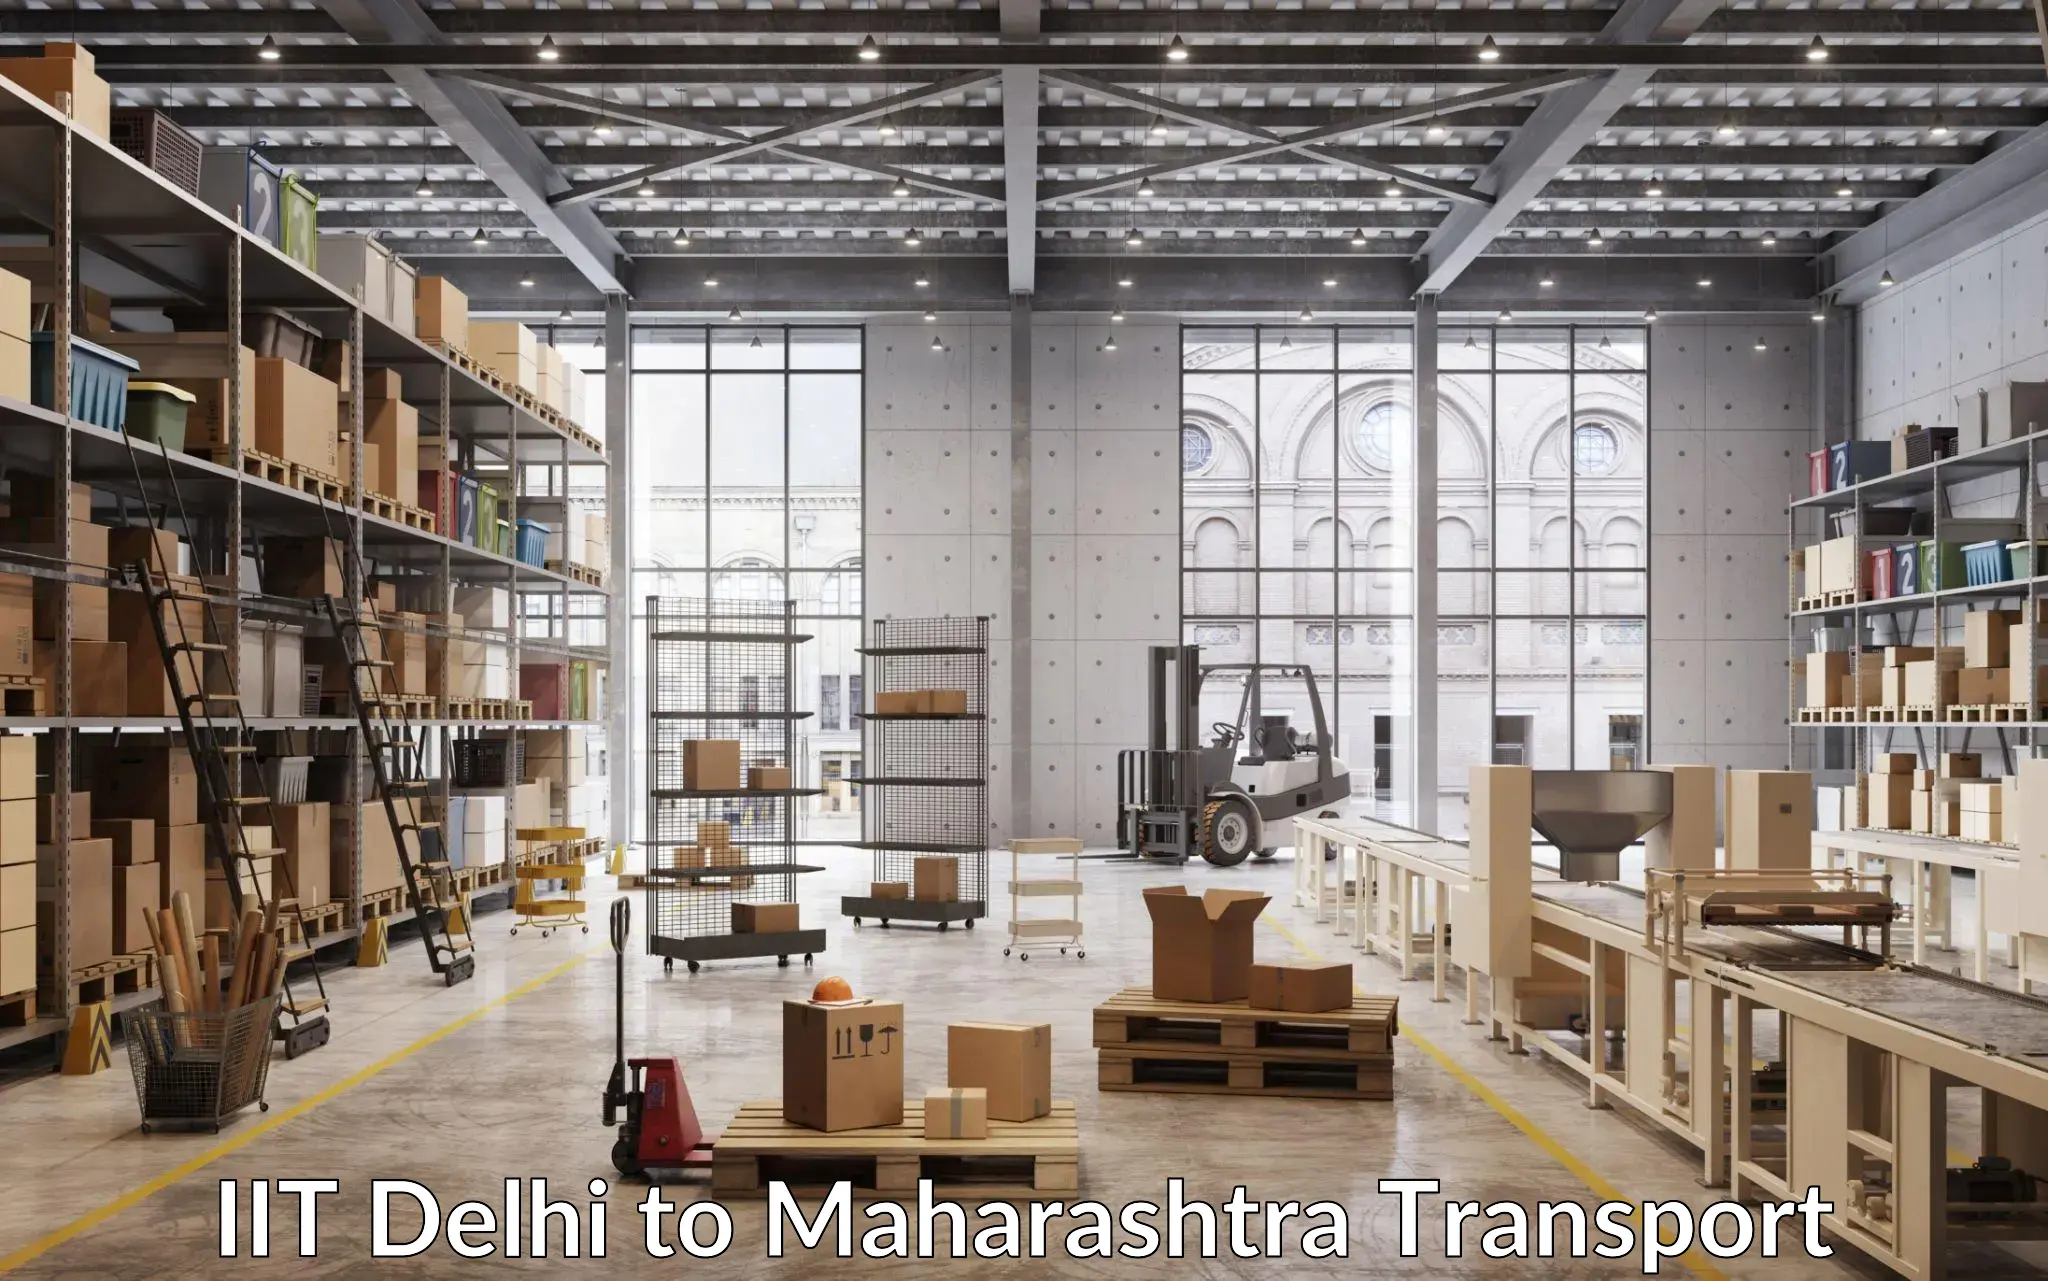 Cargo train transport services IIT Delhi to Maharashtra